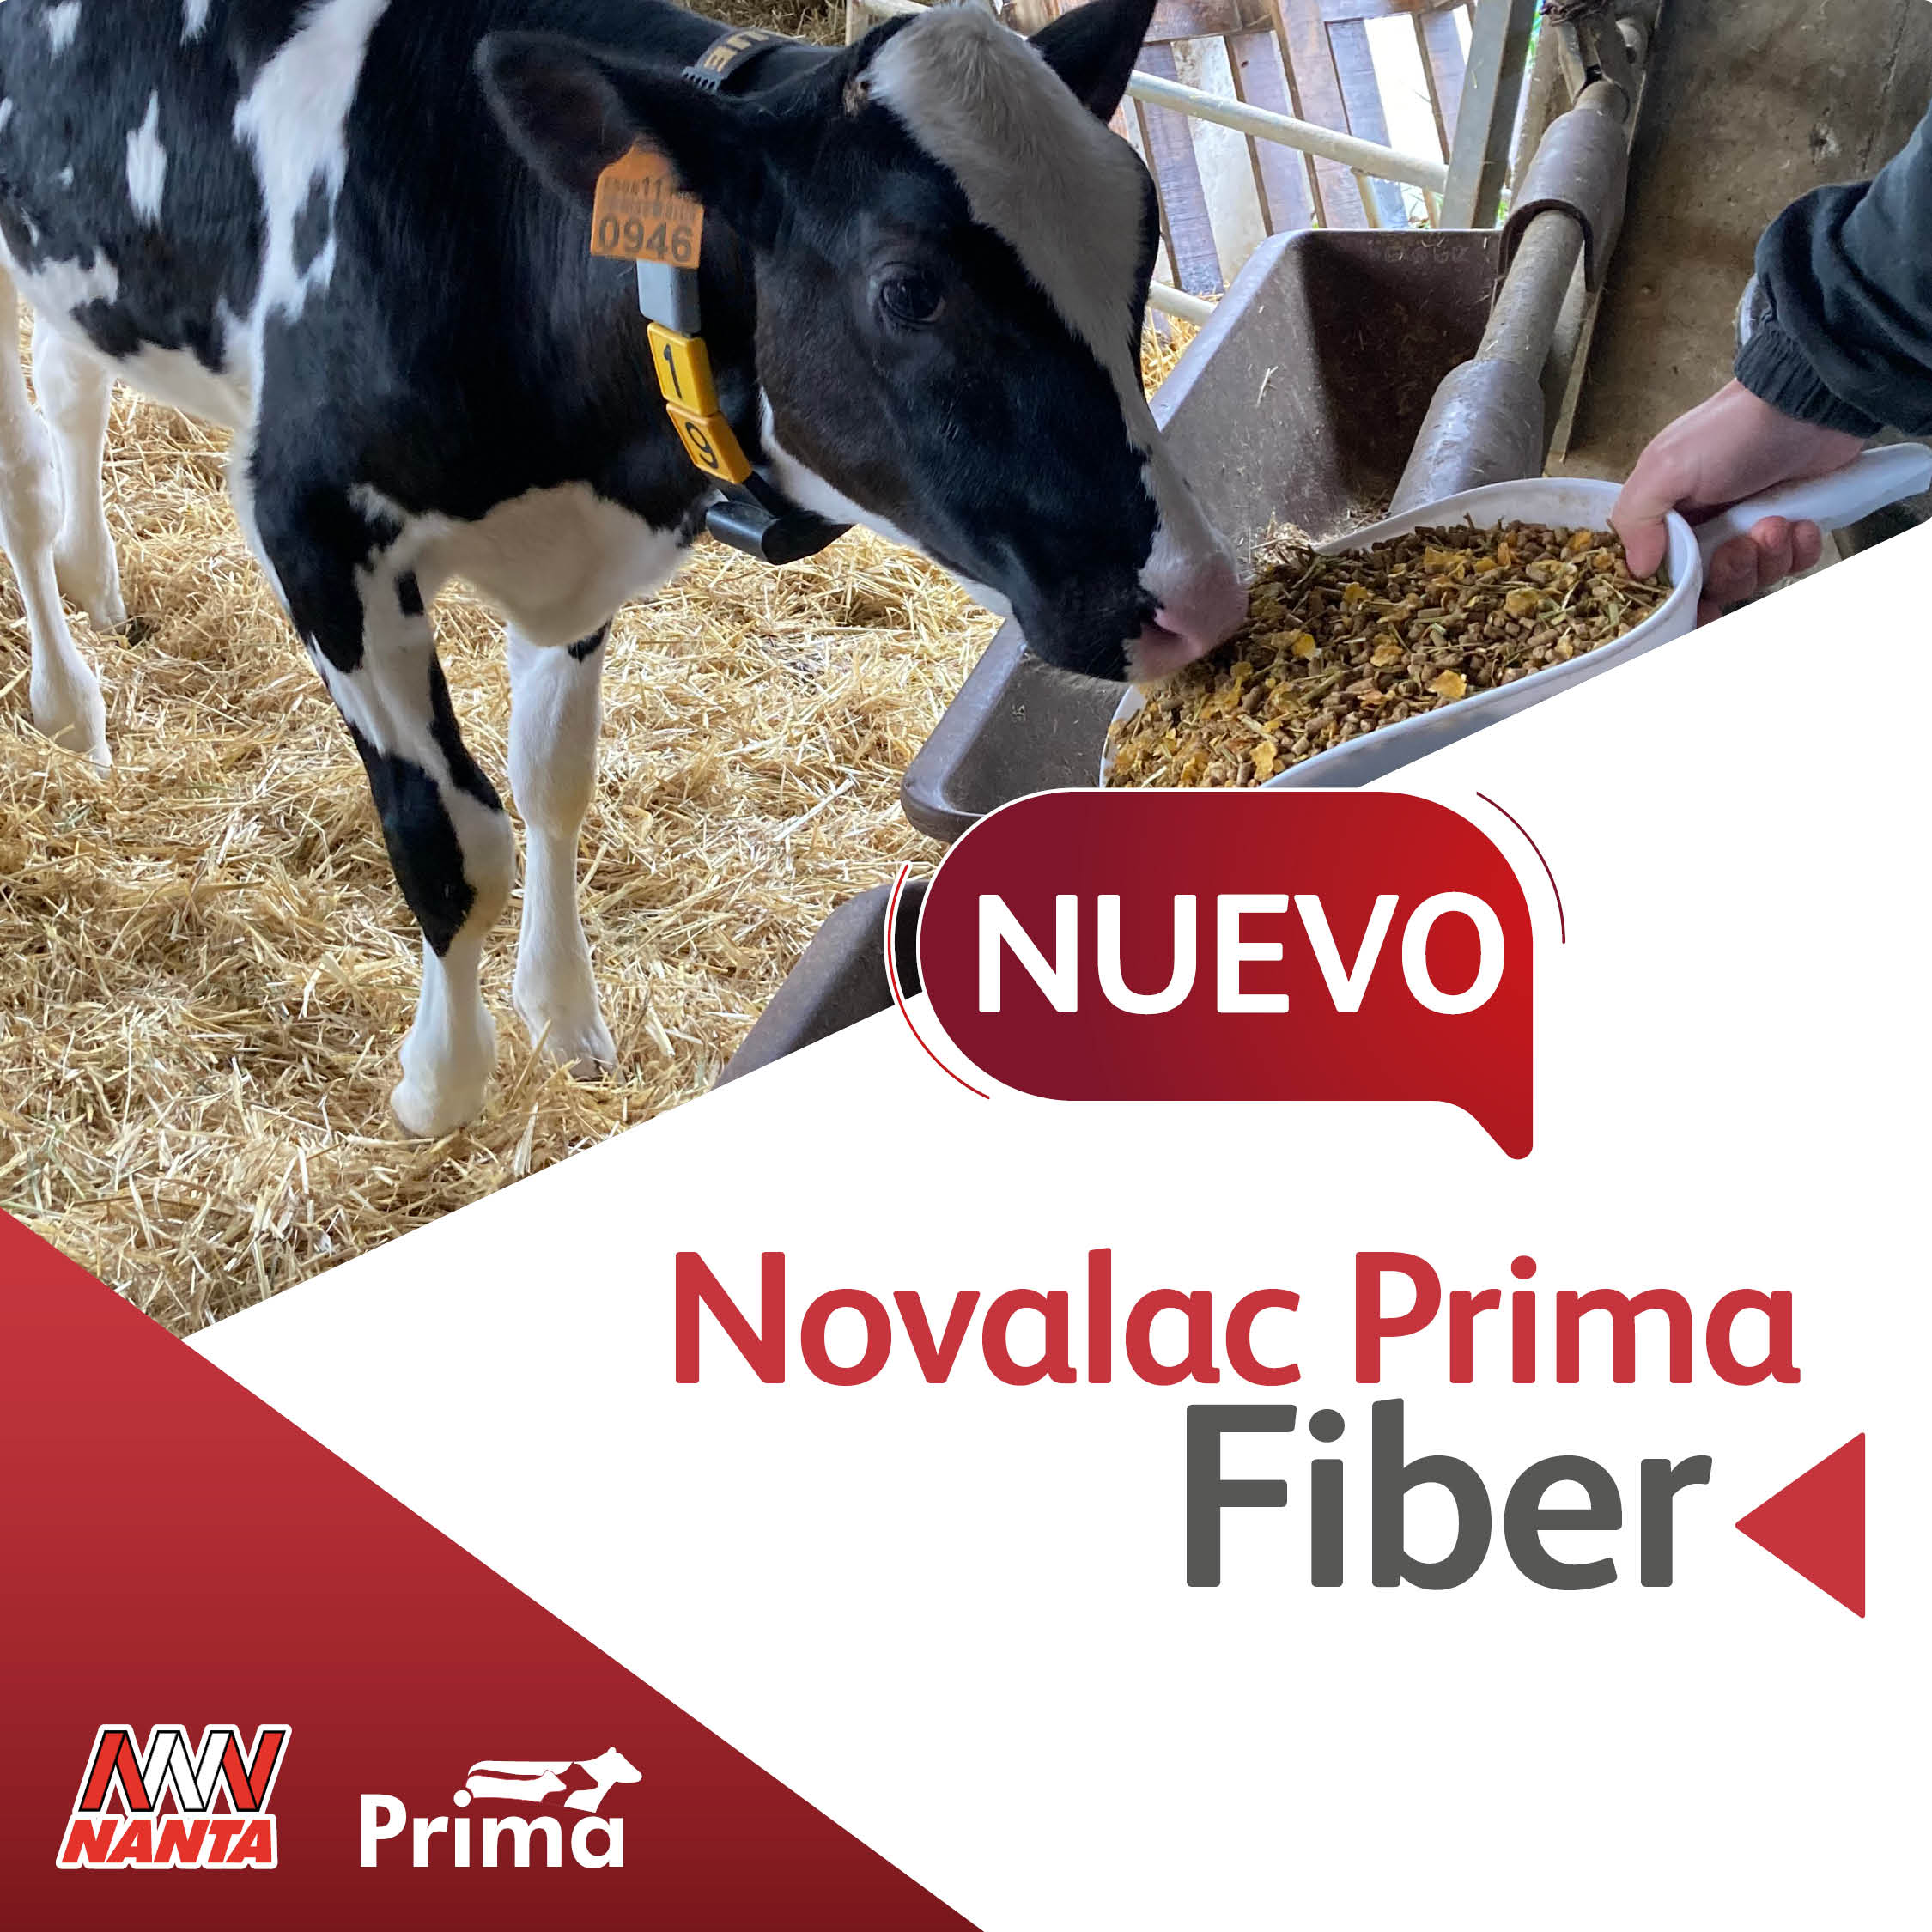 Novalac Prima Fiber